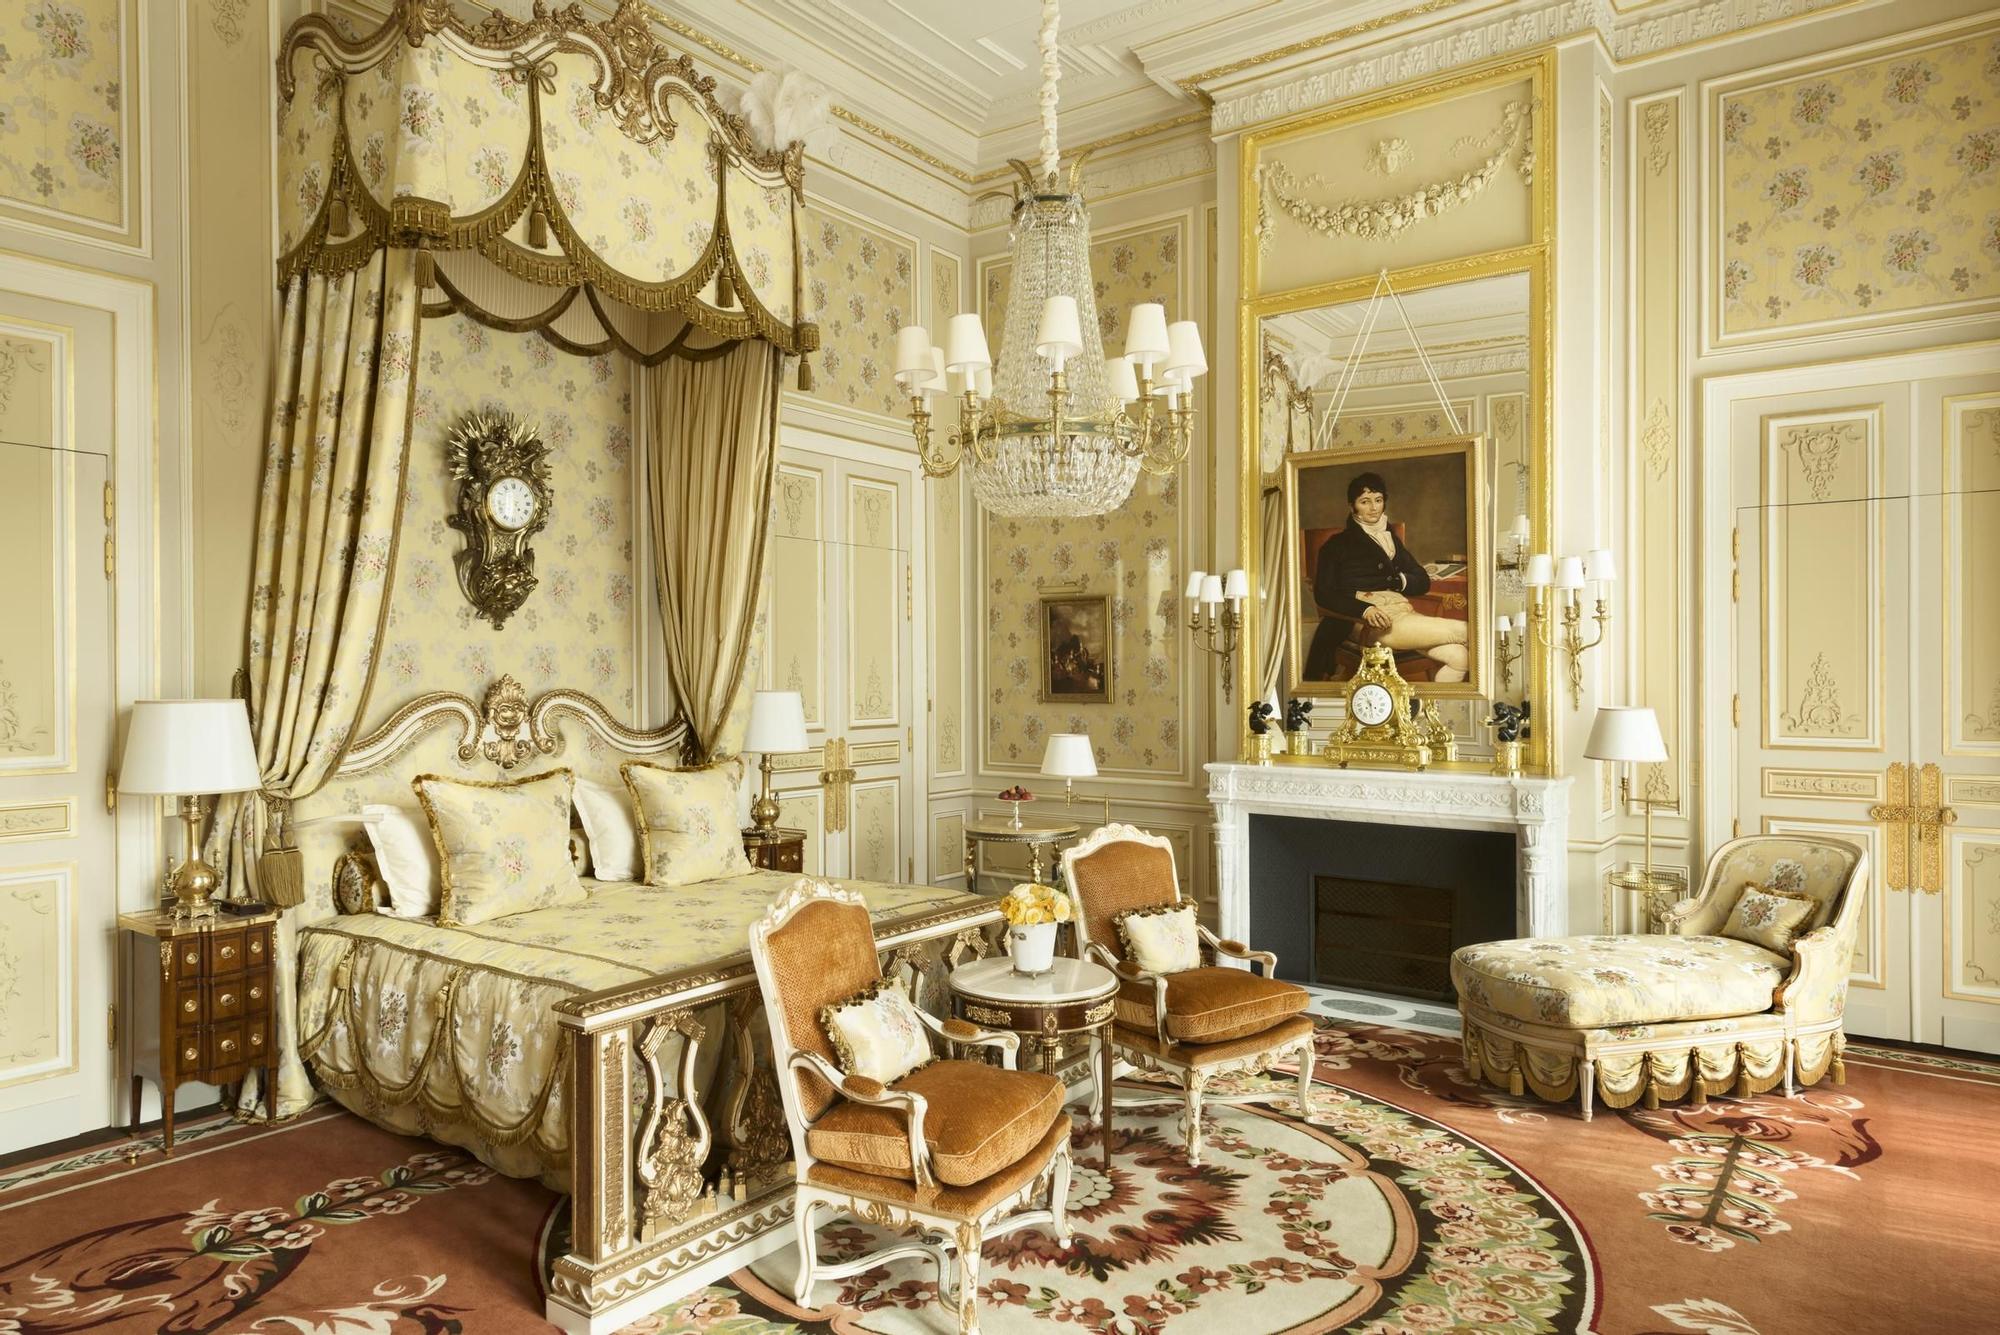 El hotel fue fundado en 1875, en plena Belle Époque, por el hotelero suizo César Ritz.